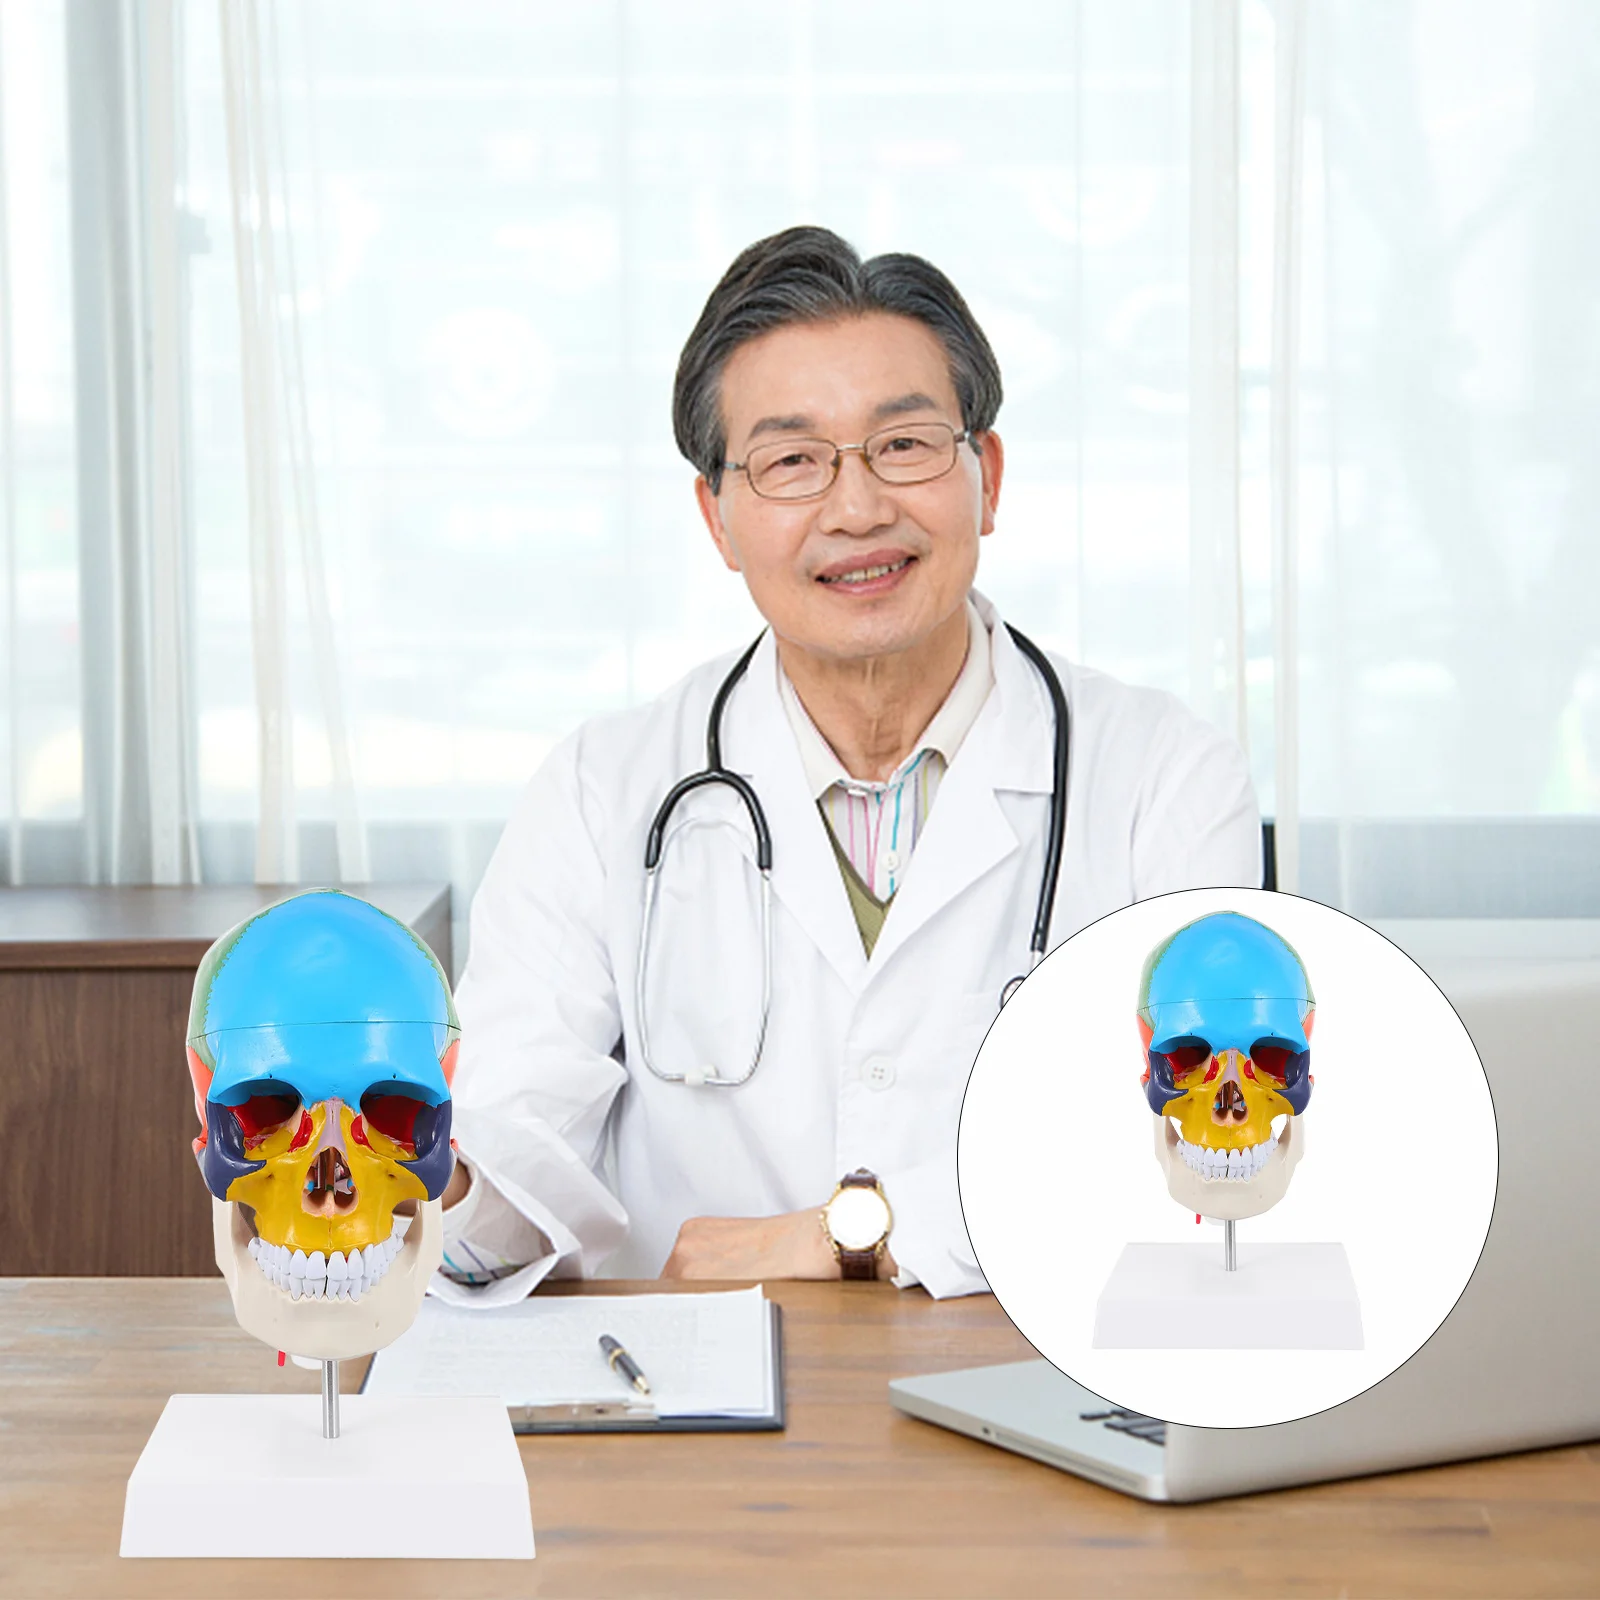 

Хэллоуин миниатюры затенение модель голова медицинская красочная человеческая анатомическая школа обучение ПВХ